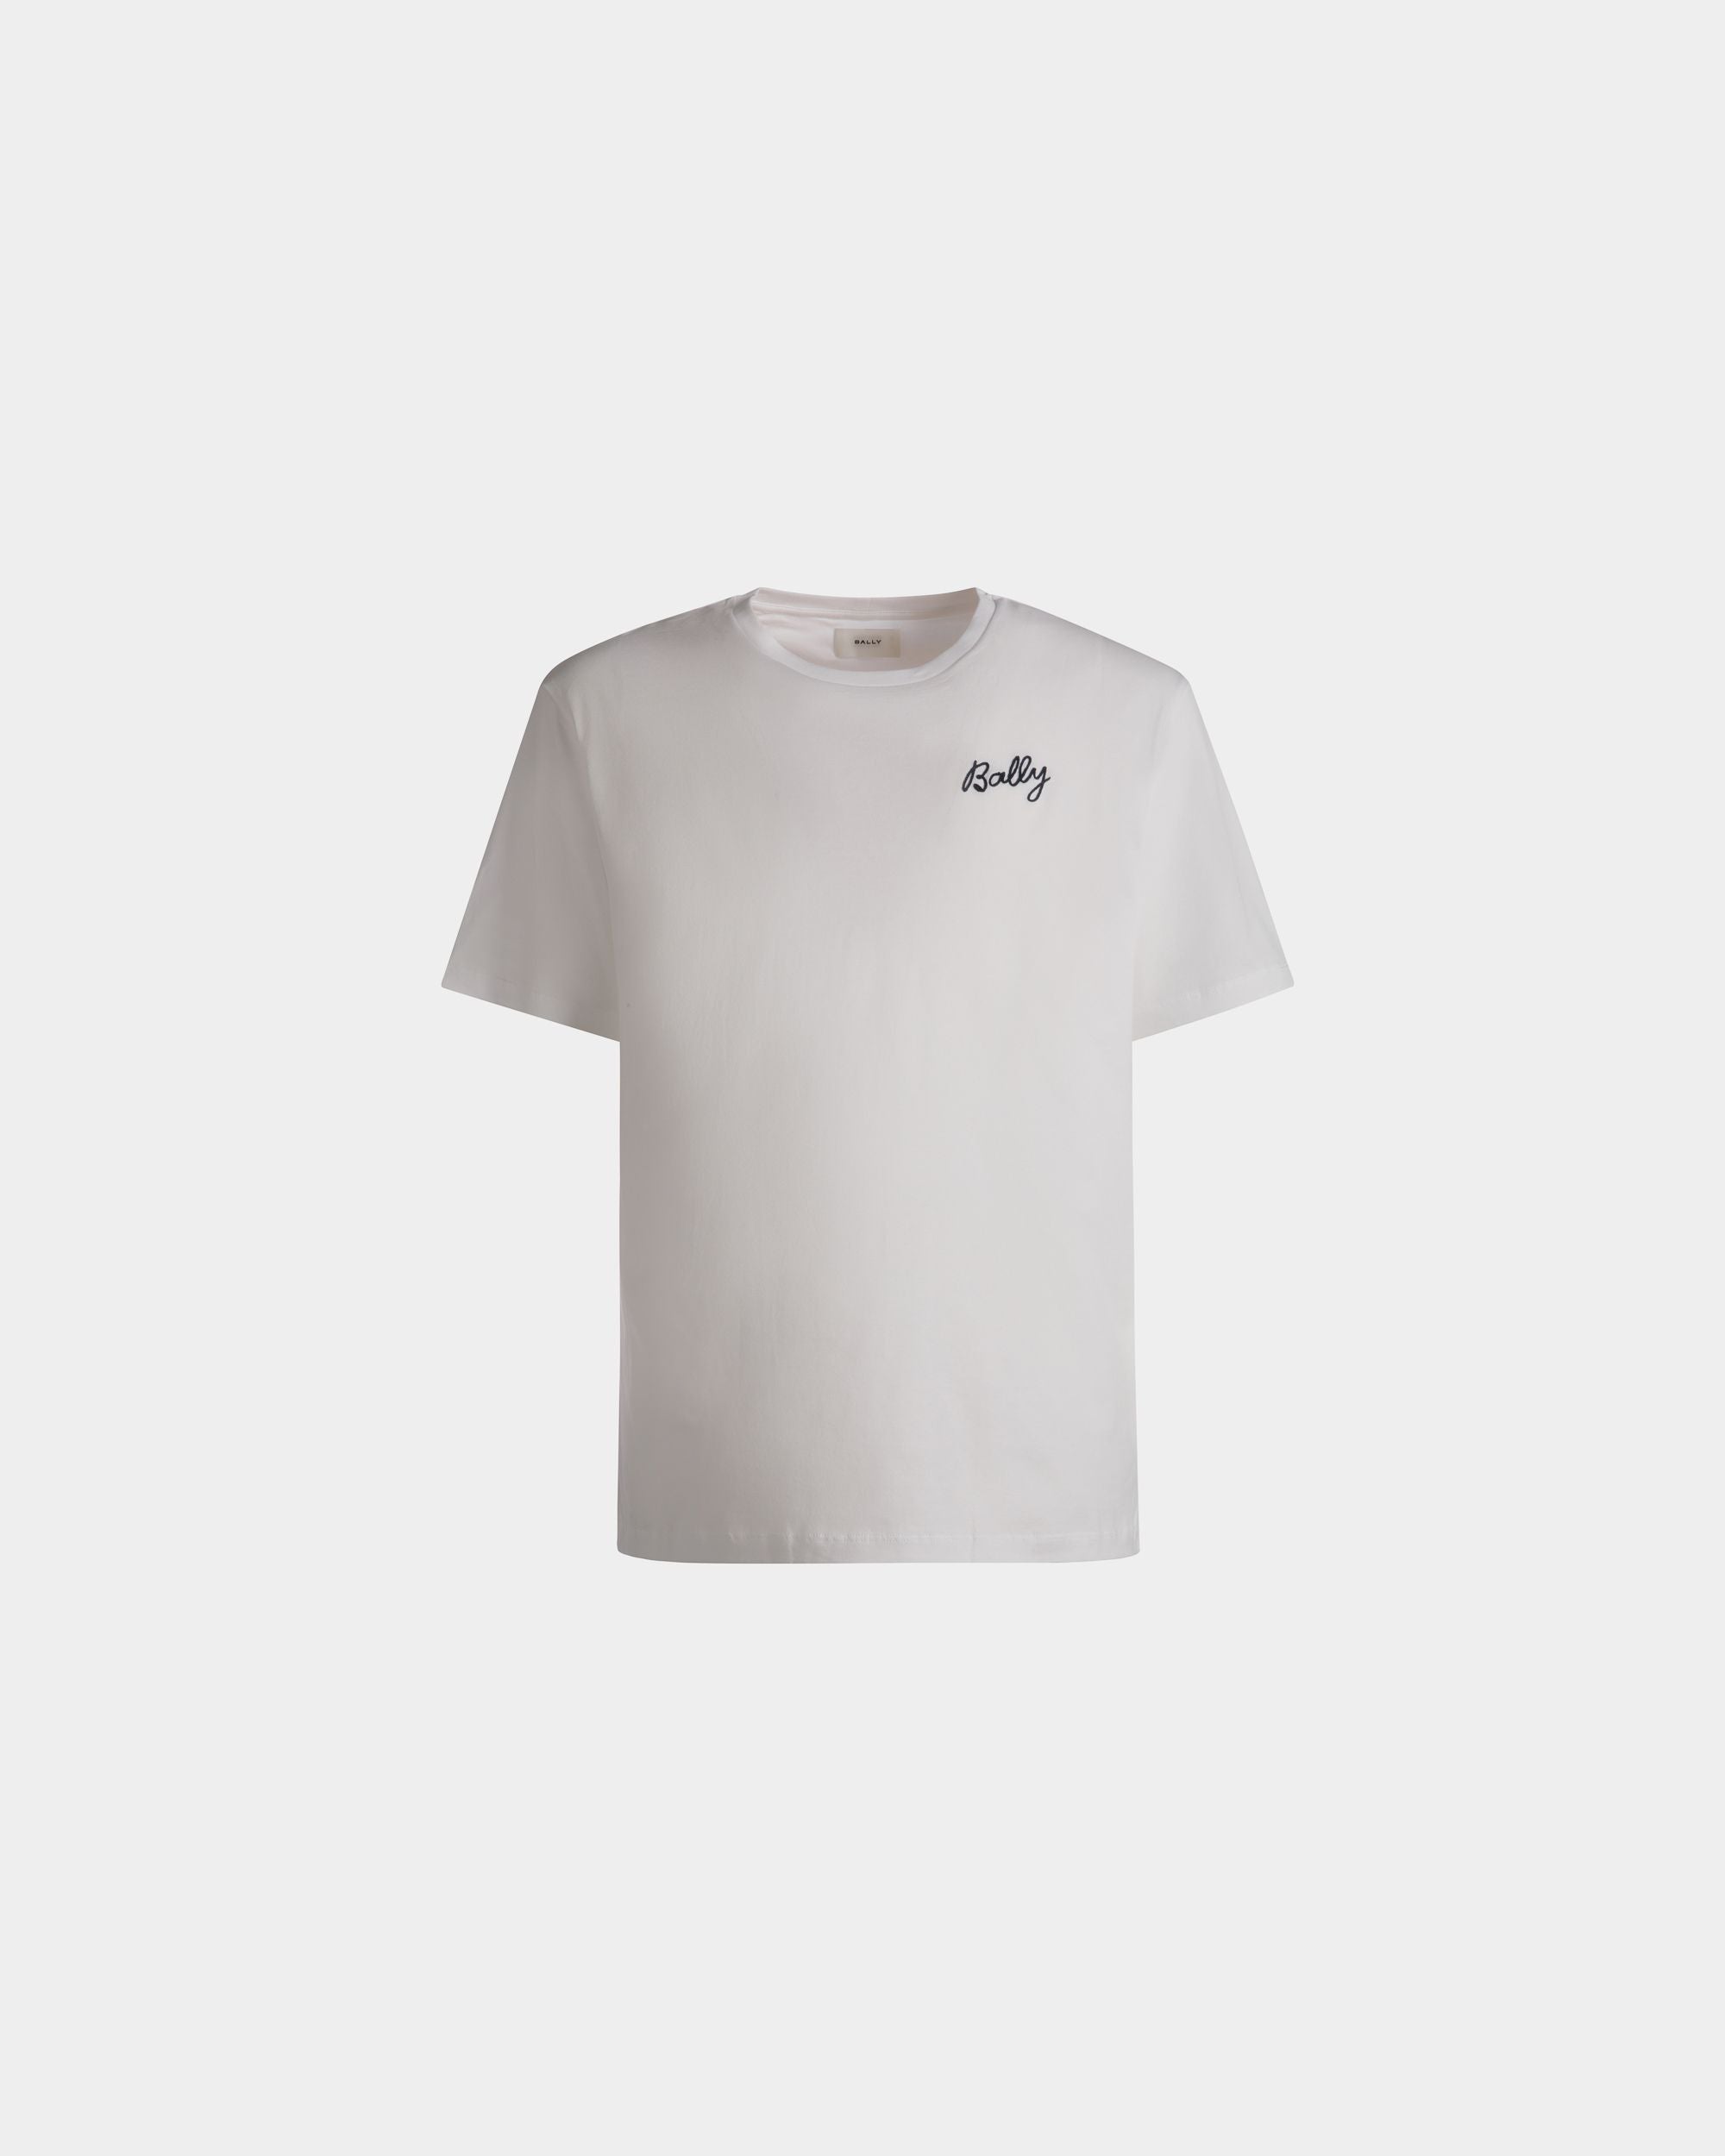 メンズ Tシャツ ホワイト コットン | Bally | Still Life フロント